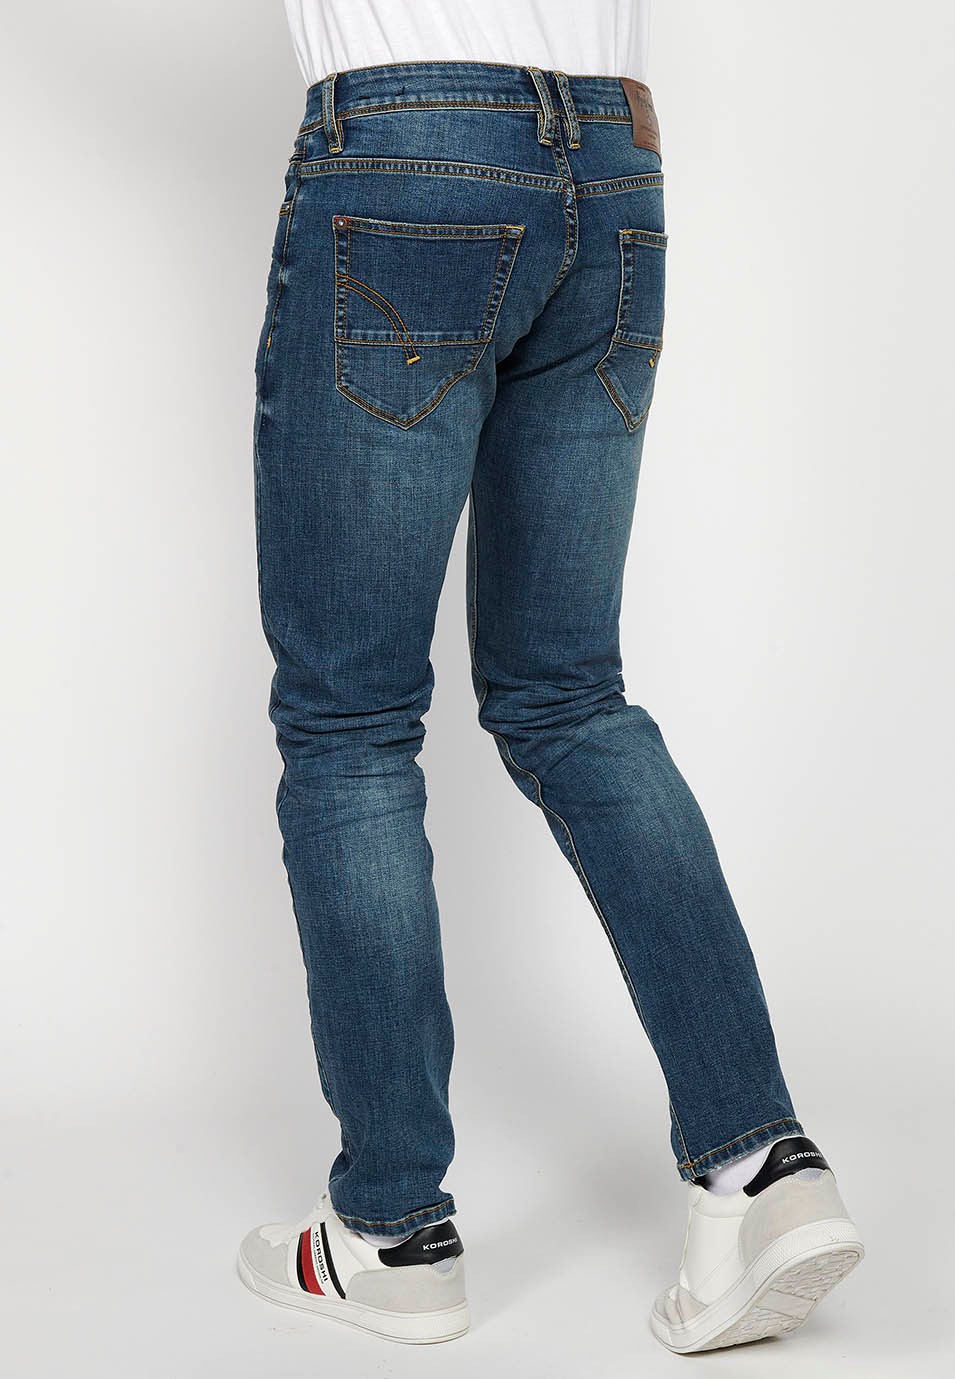 Pantalons llargs denim straigth regular fit amb Tancament davanter amb cremallera i botó i Cinc butxaques, un ceriller de Color Blau per a Home 6